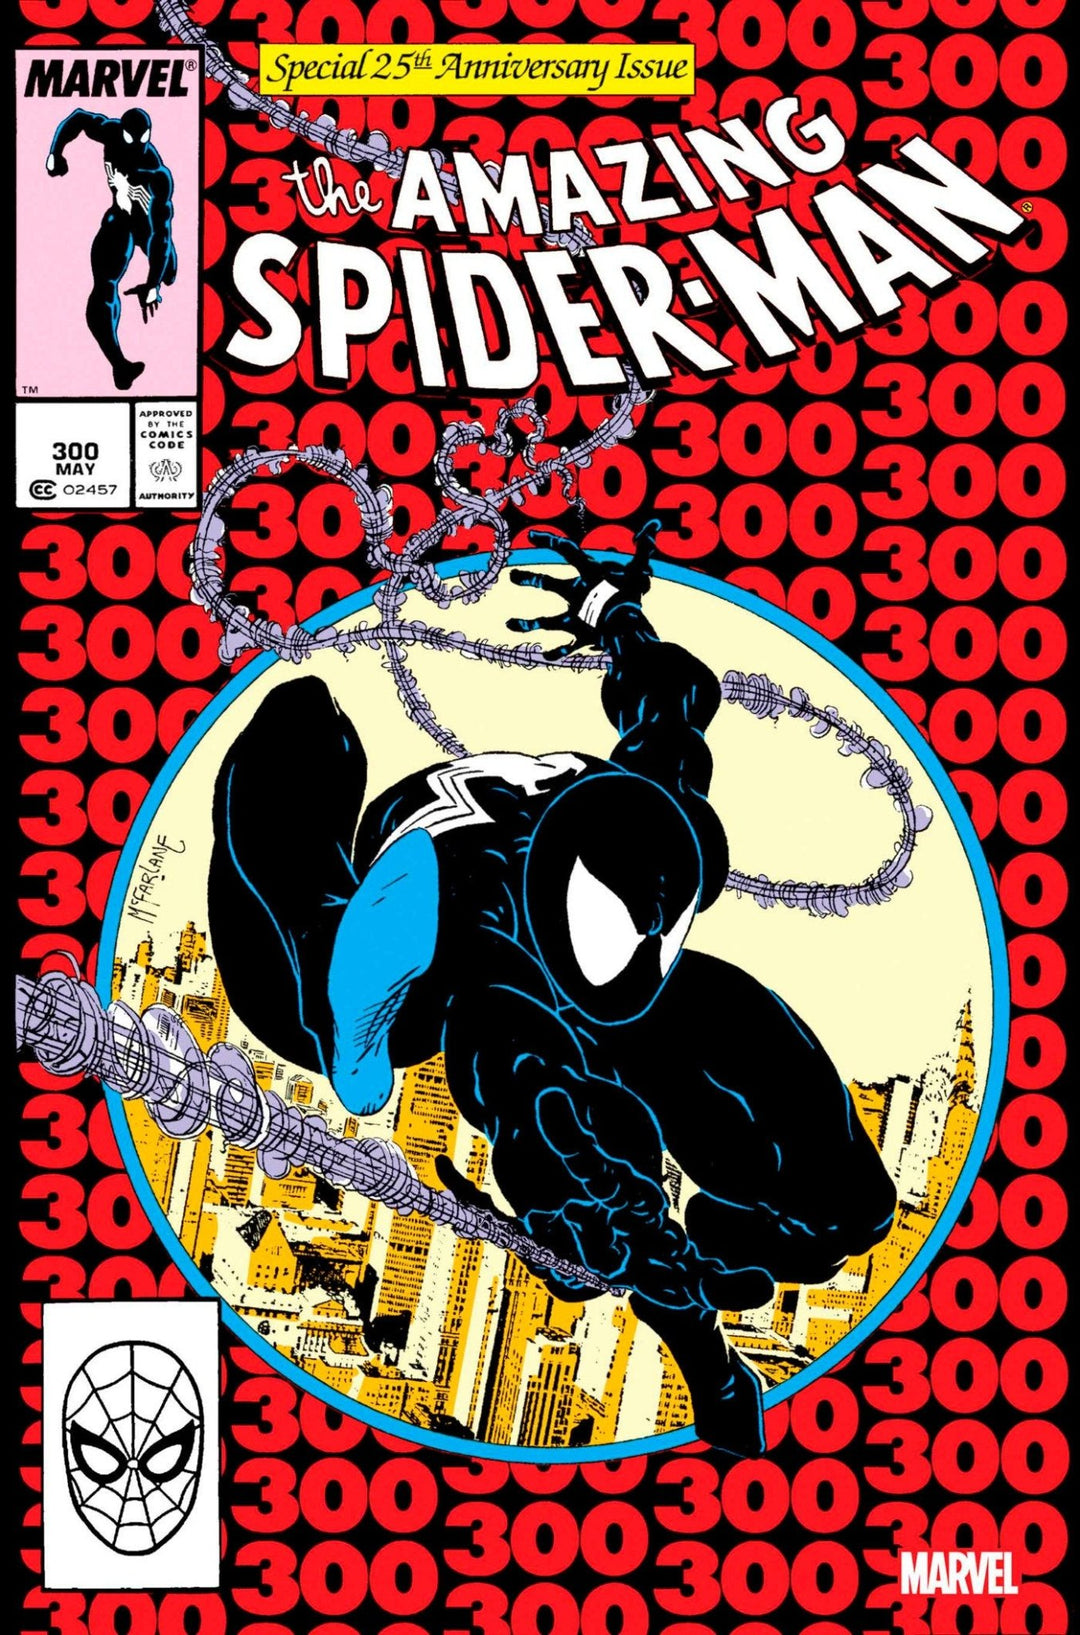 Amazing Spider-Man 300 Facsimile Edition Foil Variant - gabescaveccc